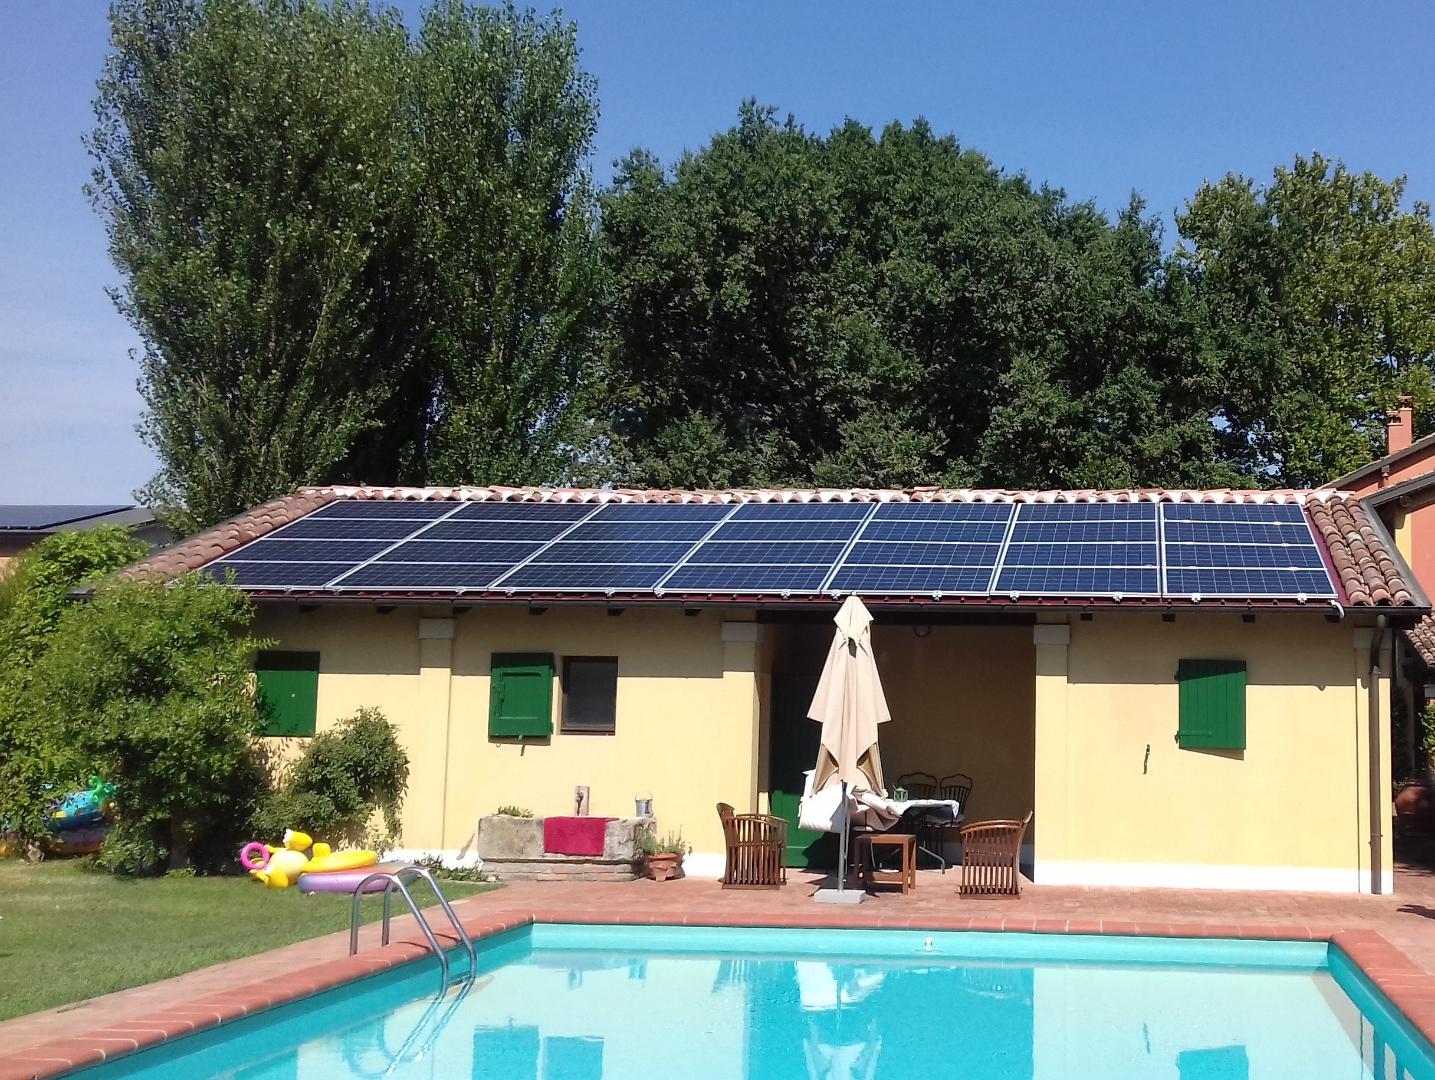 Impianto fotovoltaico da 7,70 kWp a Budrio bologna